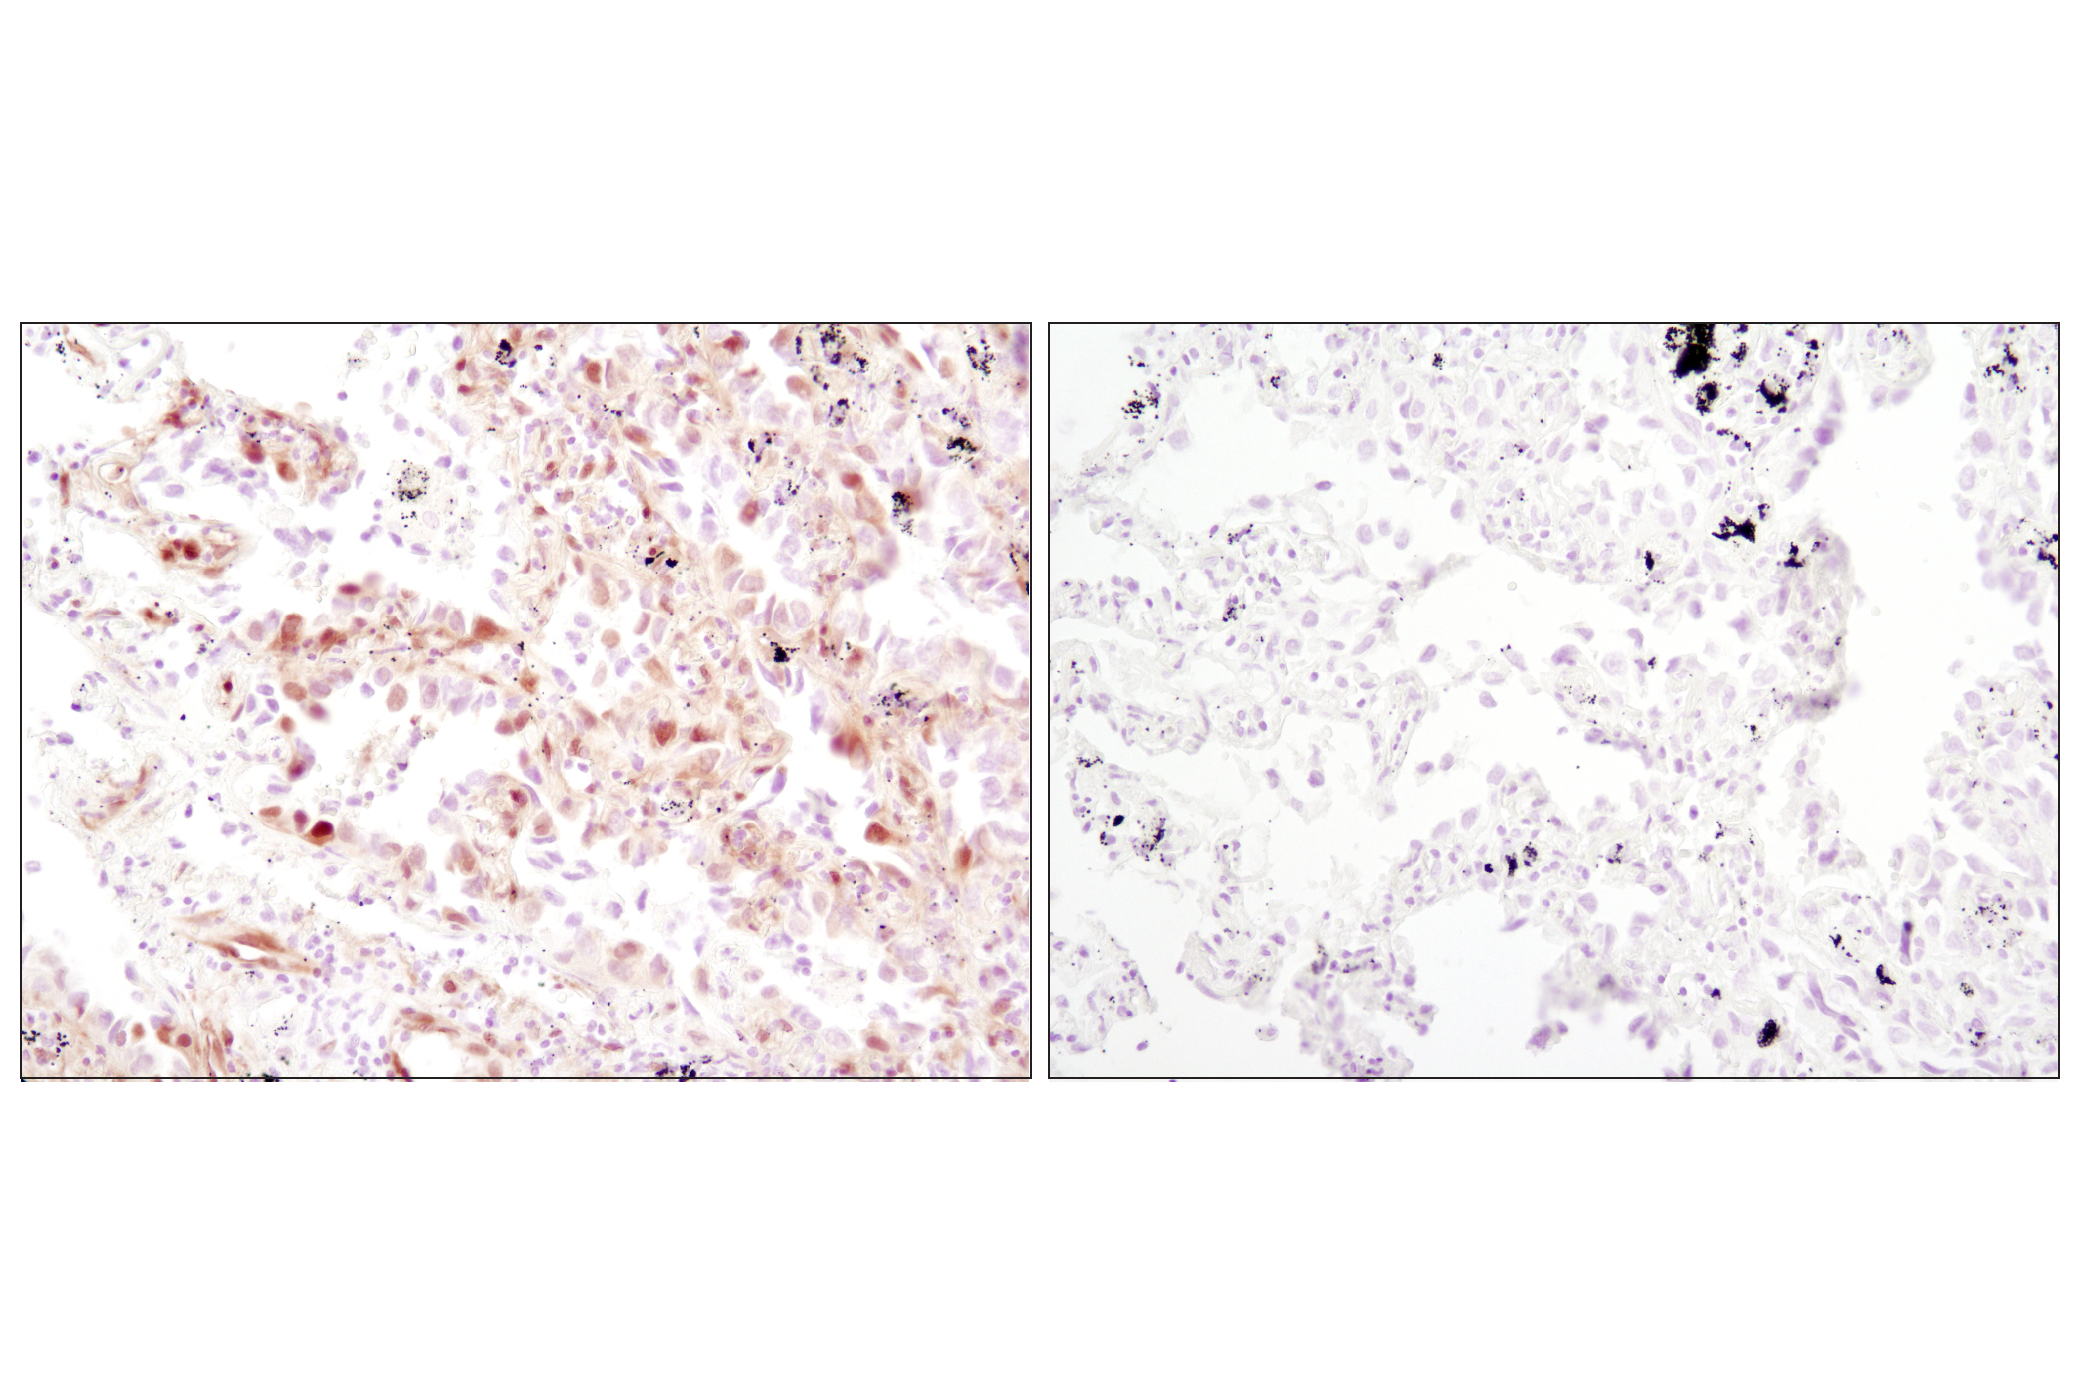  Image 12: PhosphoPlus® p44/42 MAPK (Erk1/2) (Thr202/Tyr204) Antibody Kit